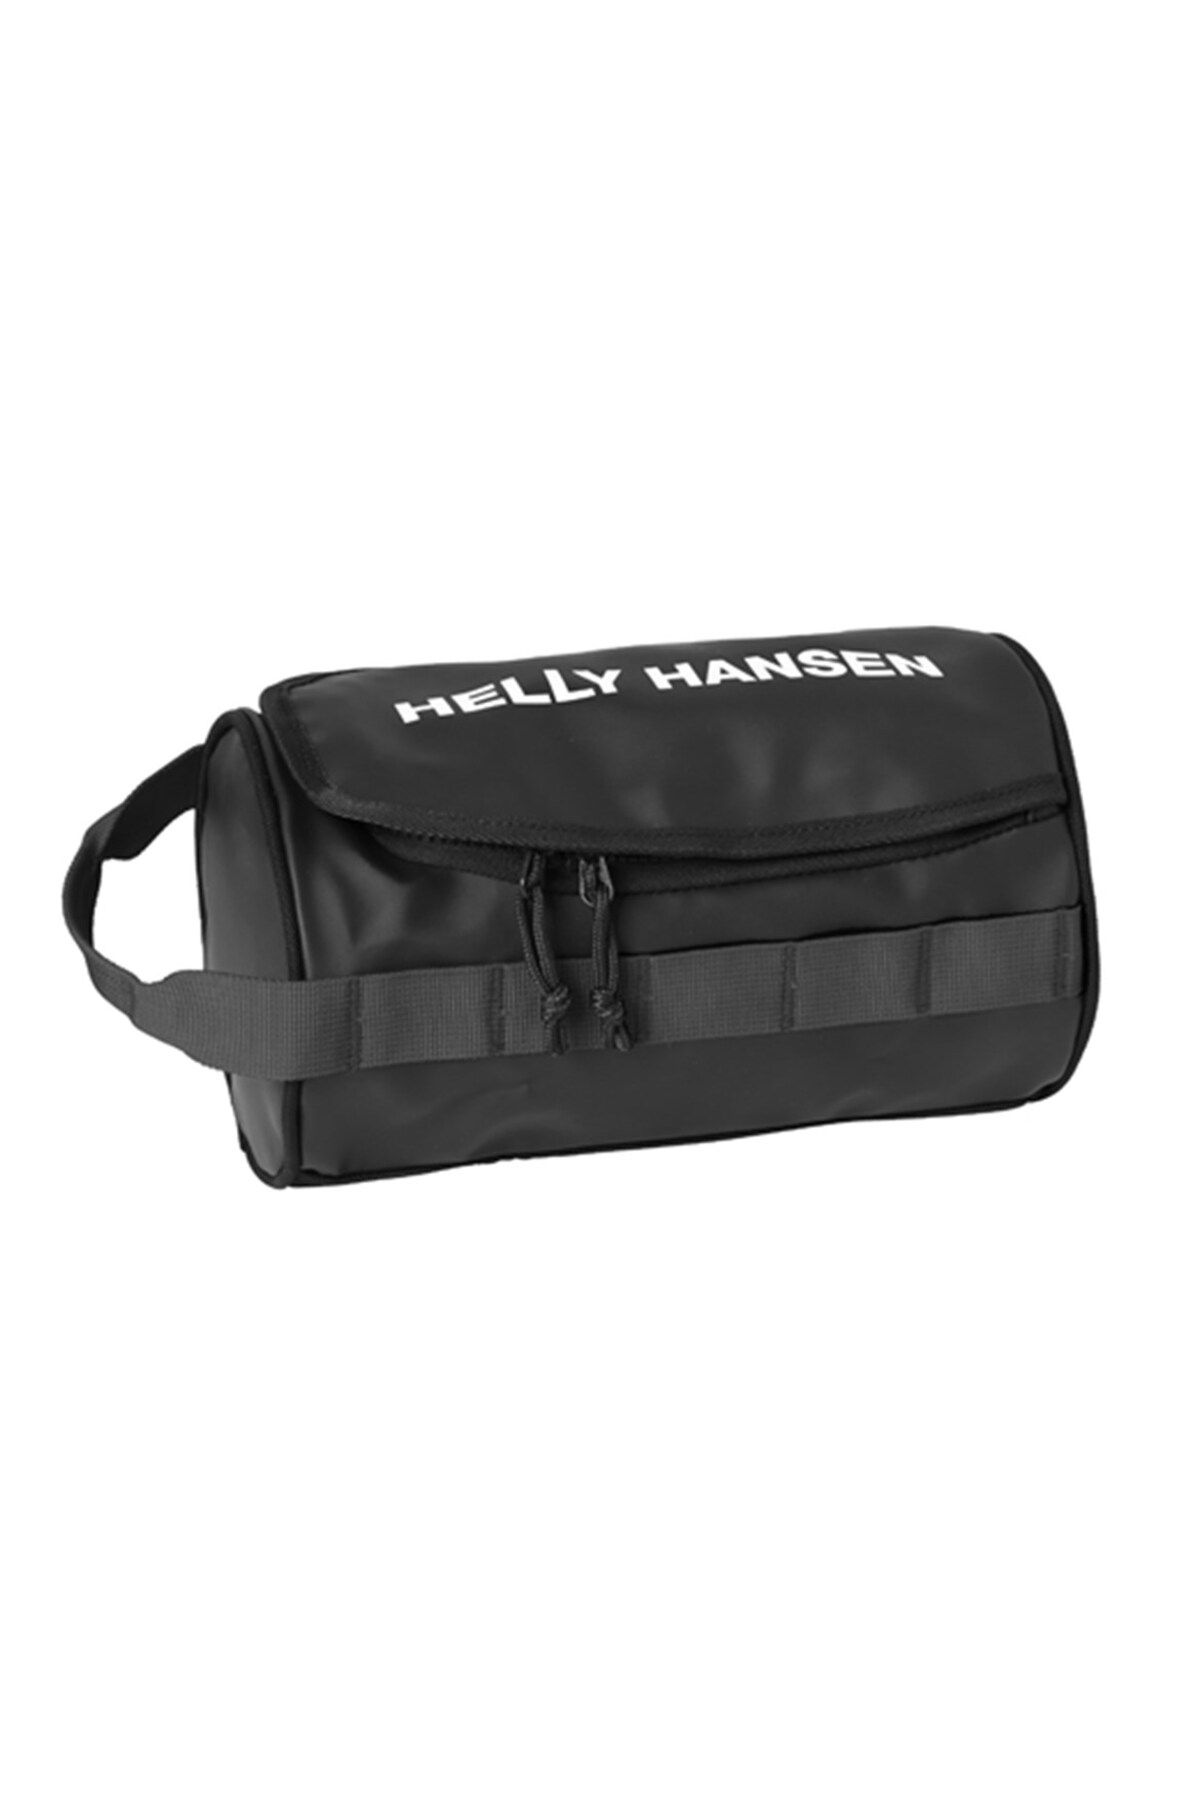 Helly Hansen Wash Bag 2 Siyah